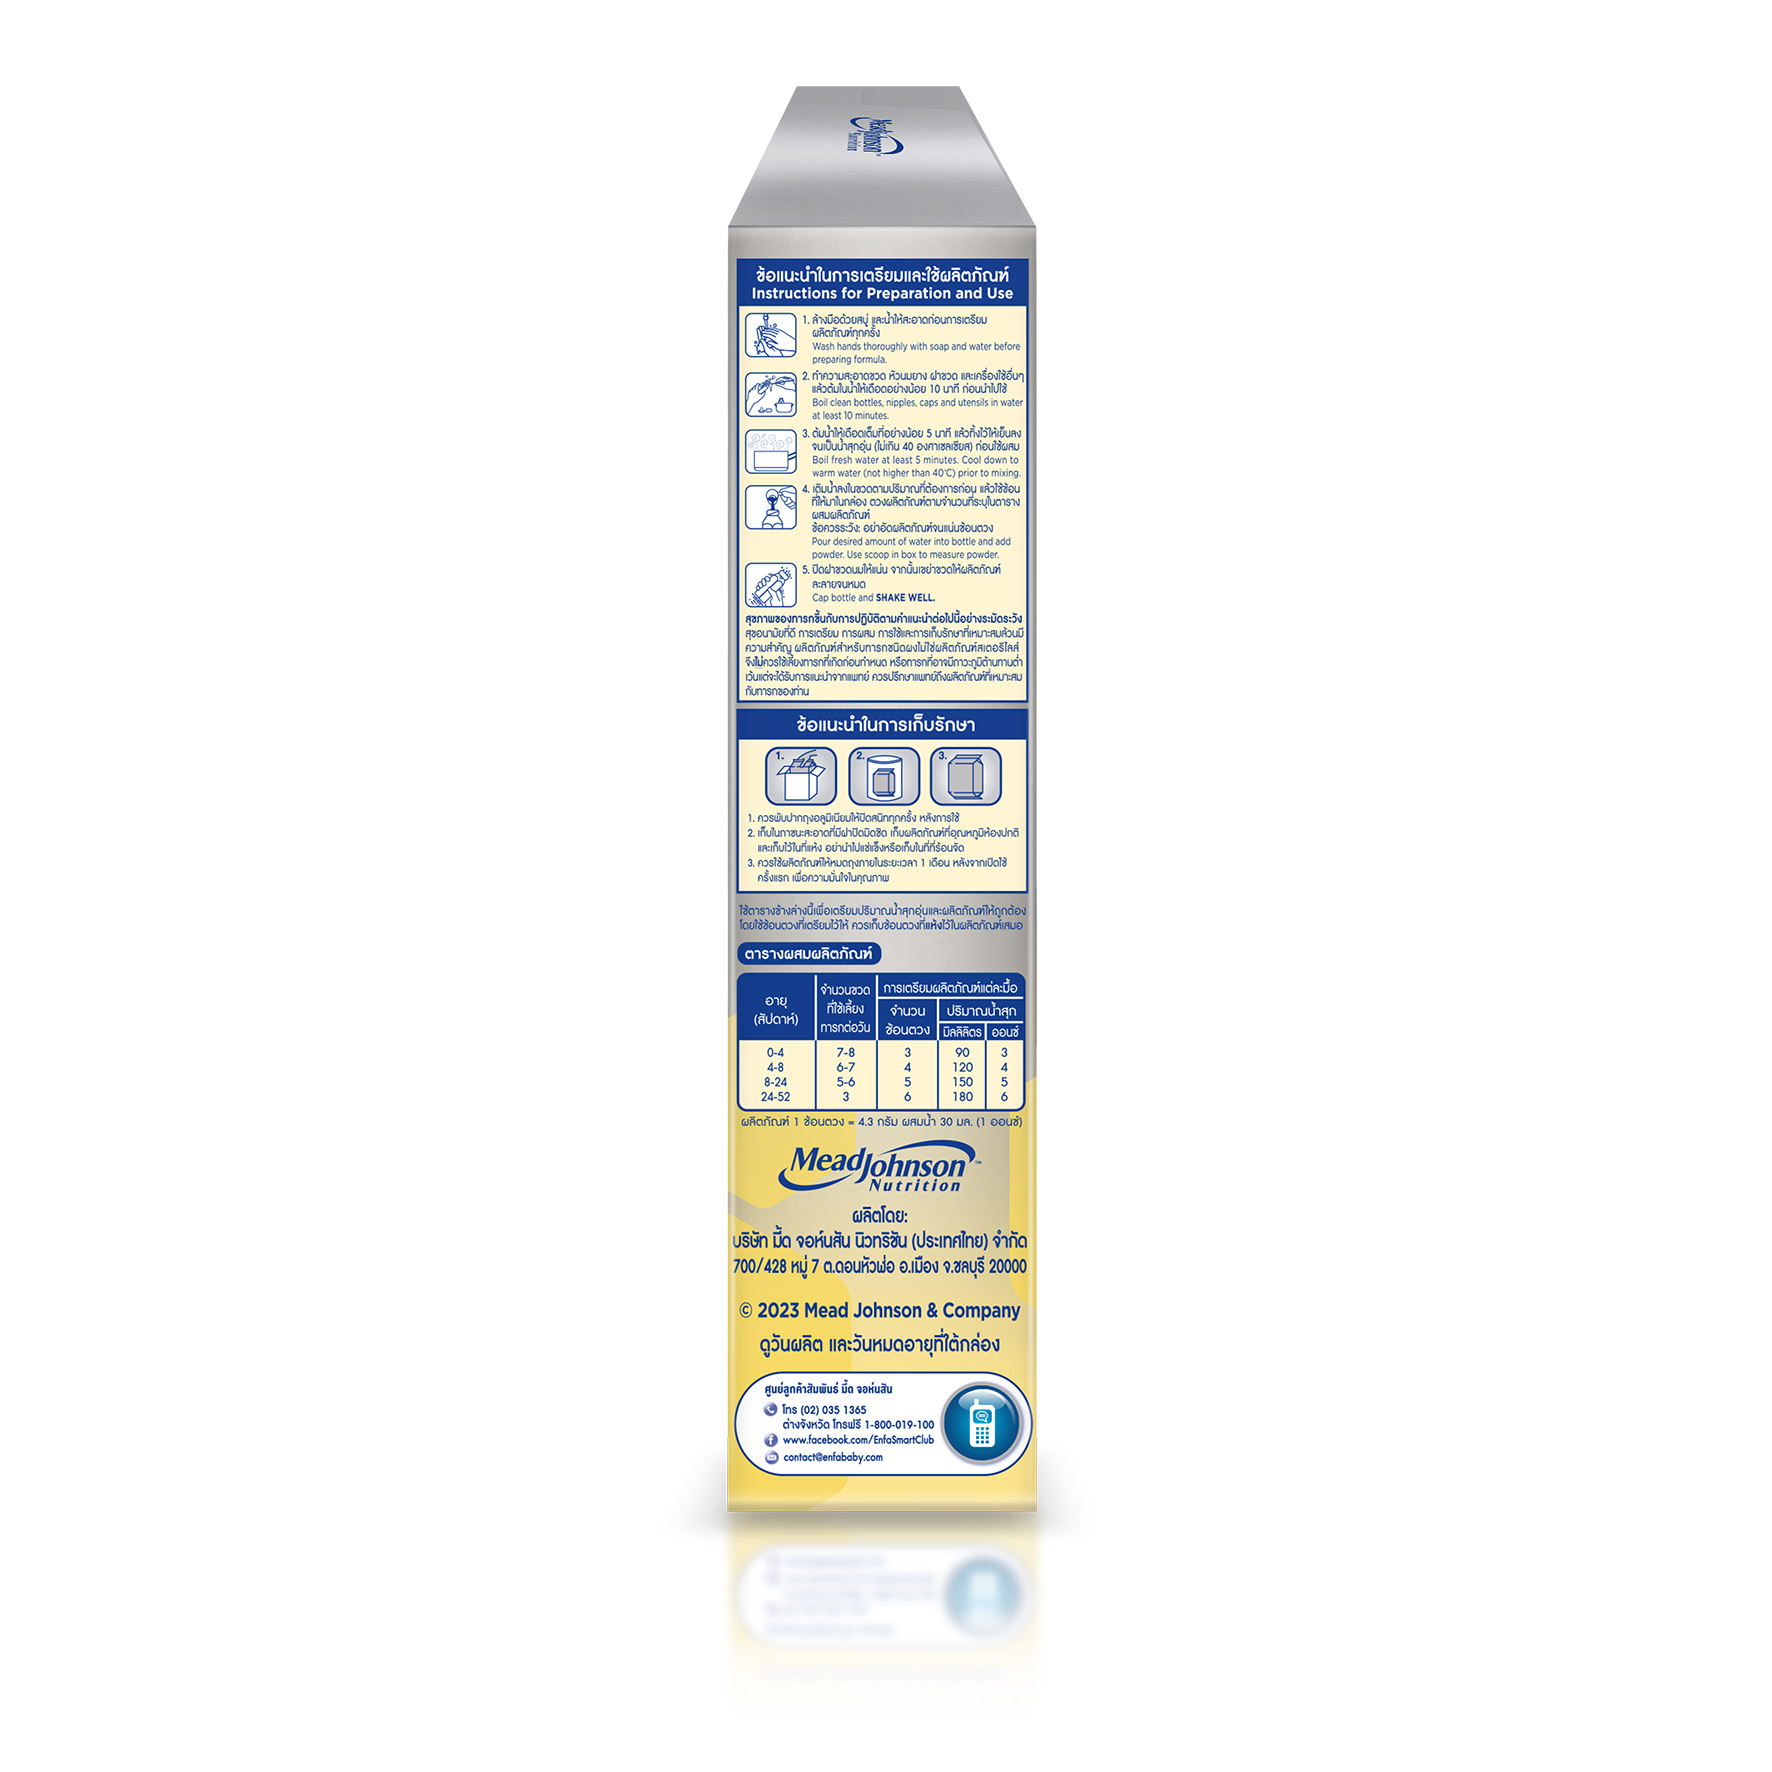 นมผงและนมยูเอชทีสำหรับเด็กแรกเกิดถึง 6 เดือน นมเอนฟาแล็ค สมาร์ทพลัส นมสูตร 1 นมผงเด็ก ขนาด 500 กรัม Enfalac Smart  1 นม เอนฟา แล็ค นมผง Enfa lac (500 กรัม x 1 ซอง)